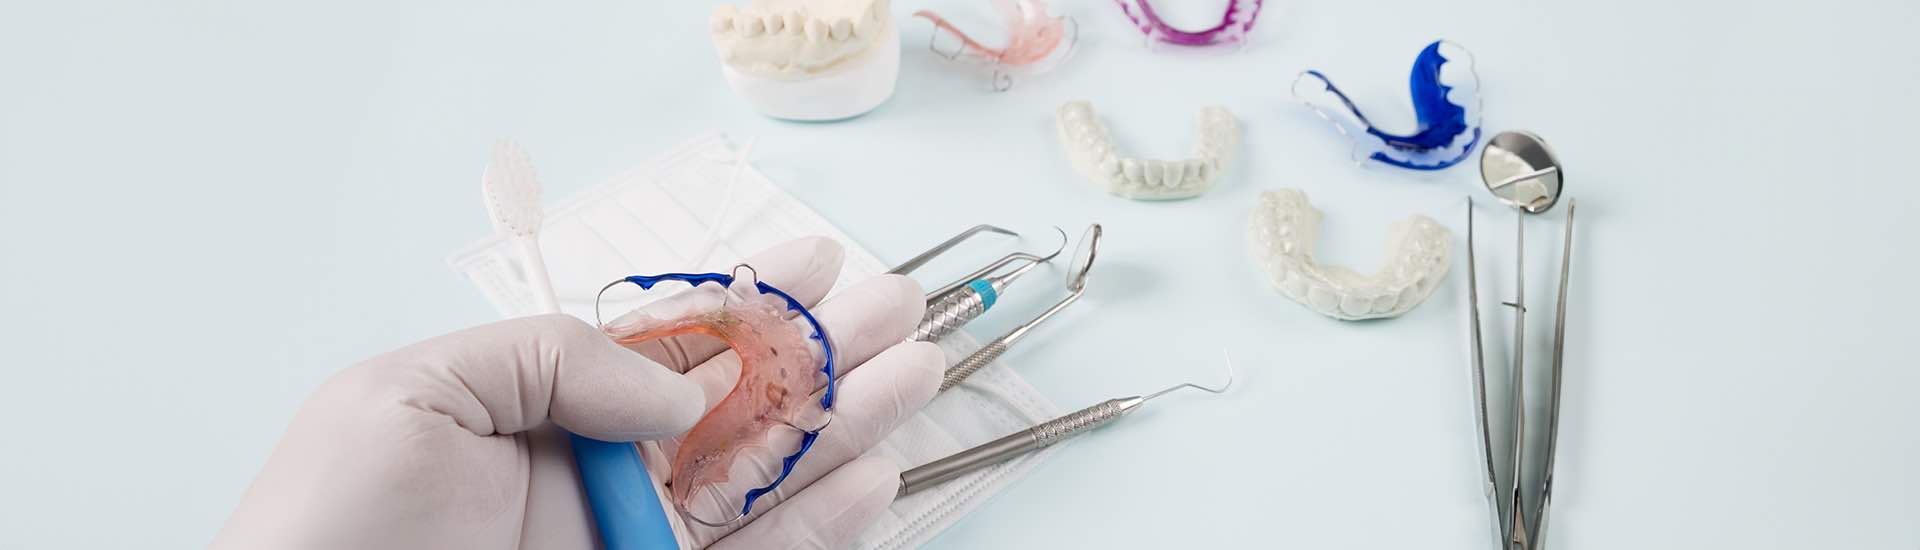 Aparat ortodontyczny stały czy ruchomy?